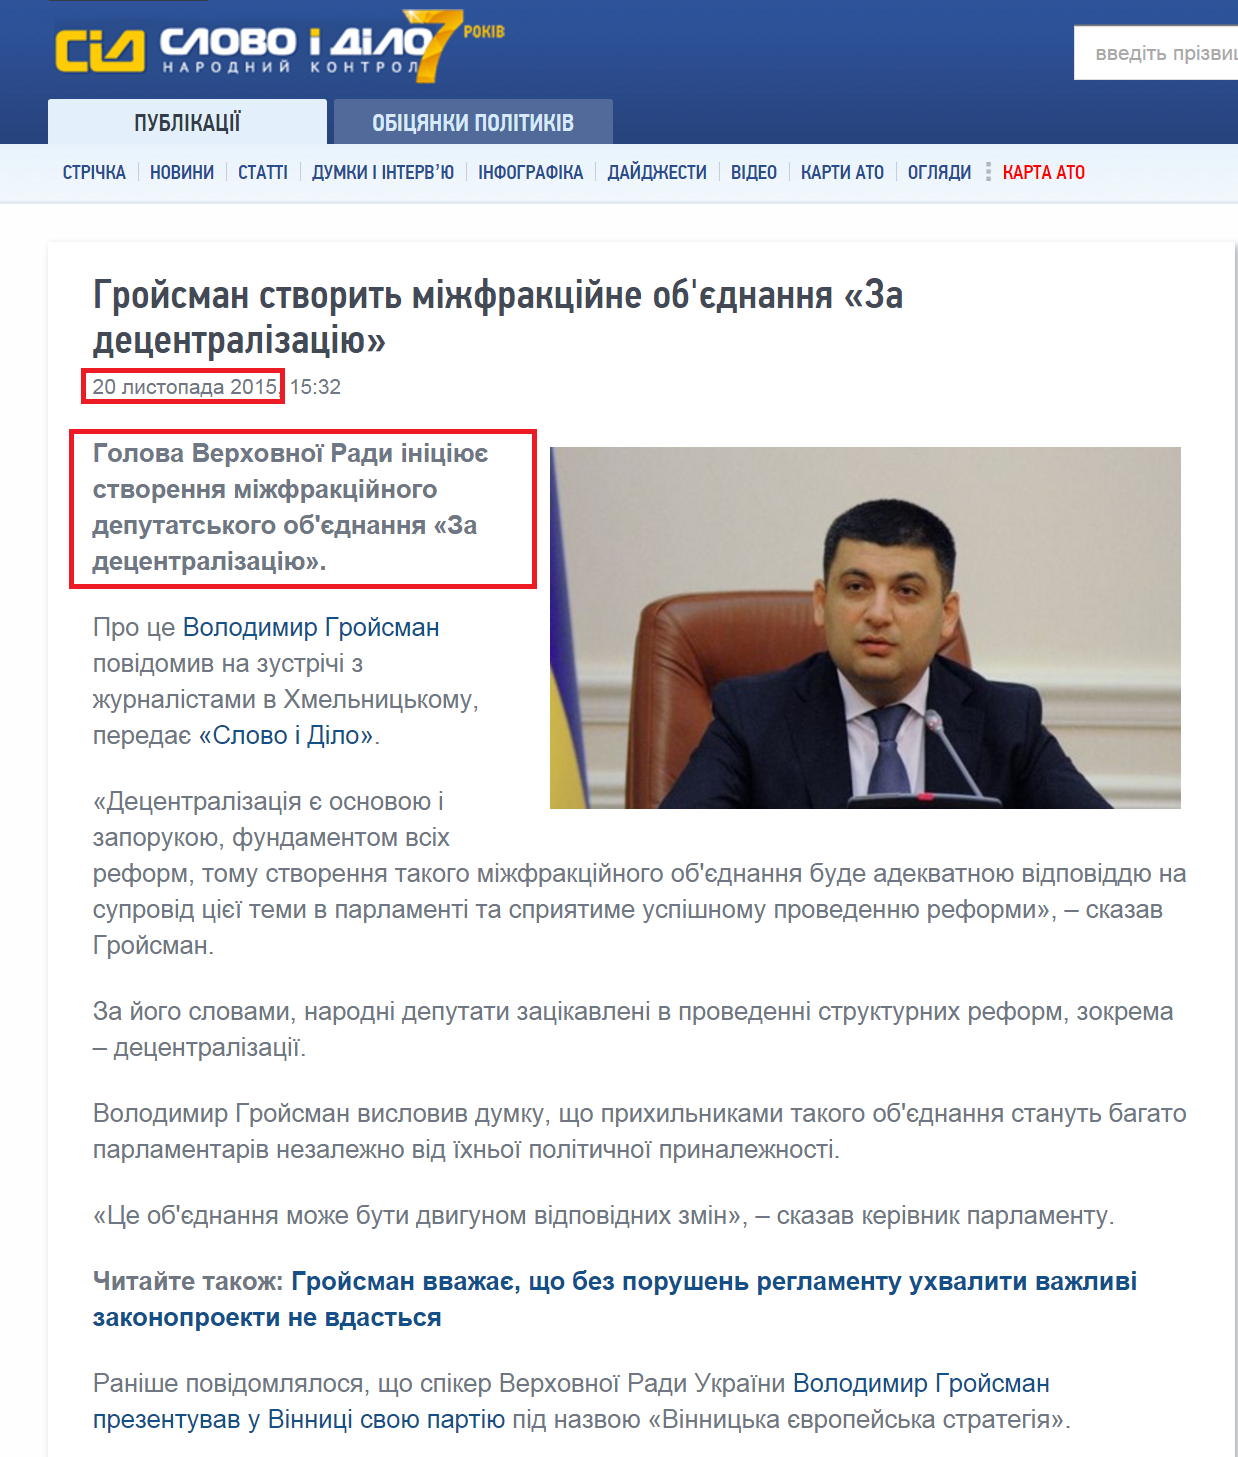 http://www.slovoidilo.ua/2015/11/20/novyna/polityka/hrojsman-stvoryt-mizhfrakczijne-obyednannya-za-decentralizacziyu